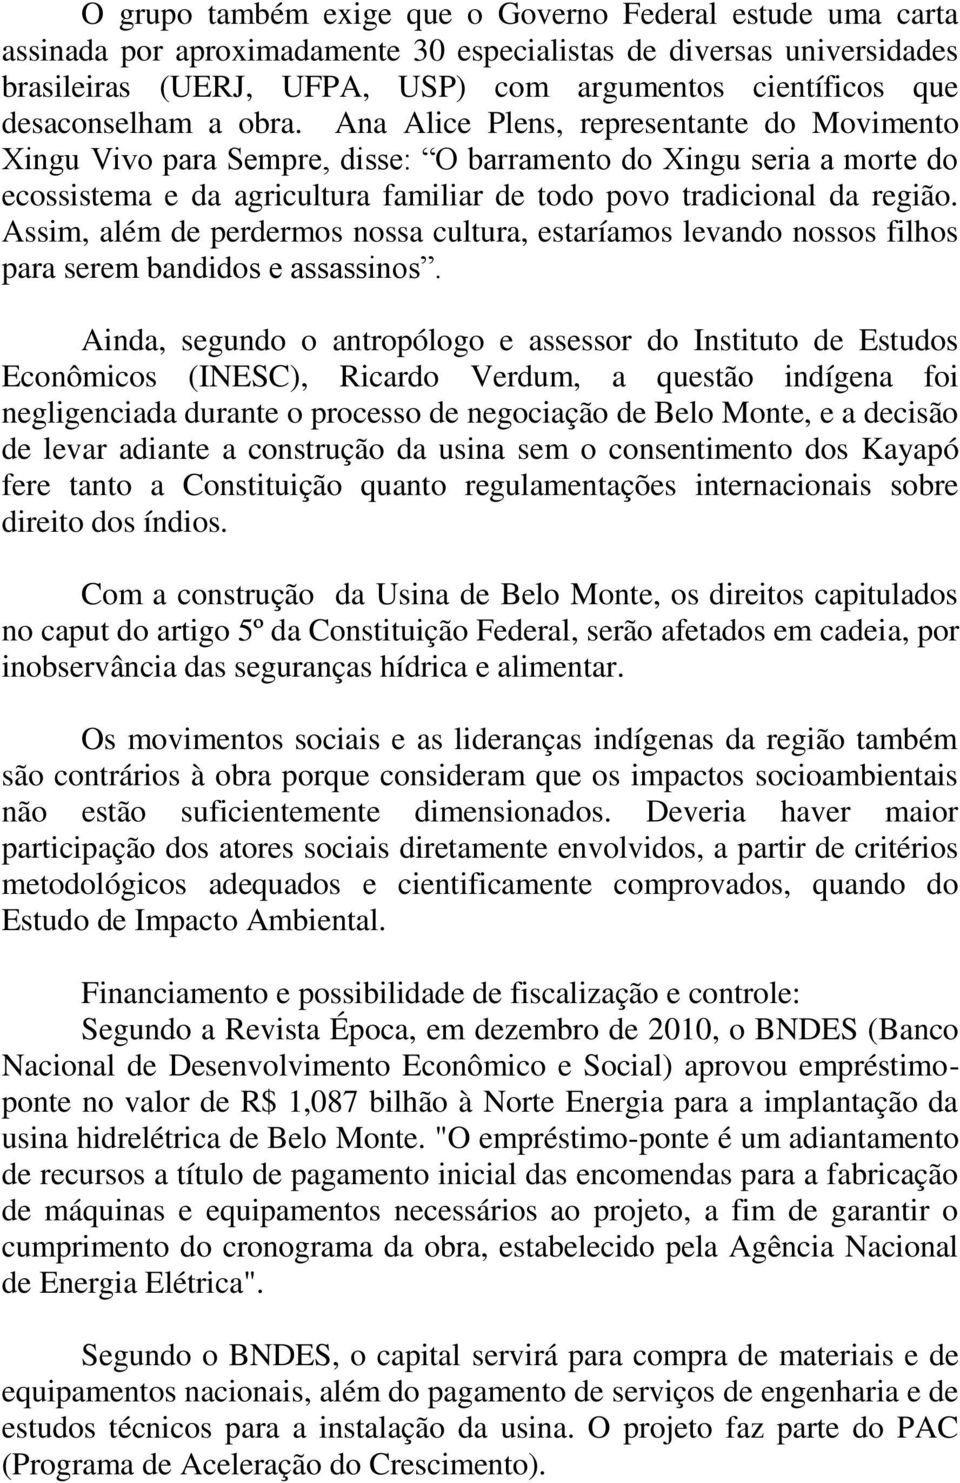 Ana Alice Plens, representante do Movimento Xingu Vivo para Sempre, disse: O barramento do Xingu seria a morte do ecossistema e da agricultura familiar de todo povo tradicional da região.